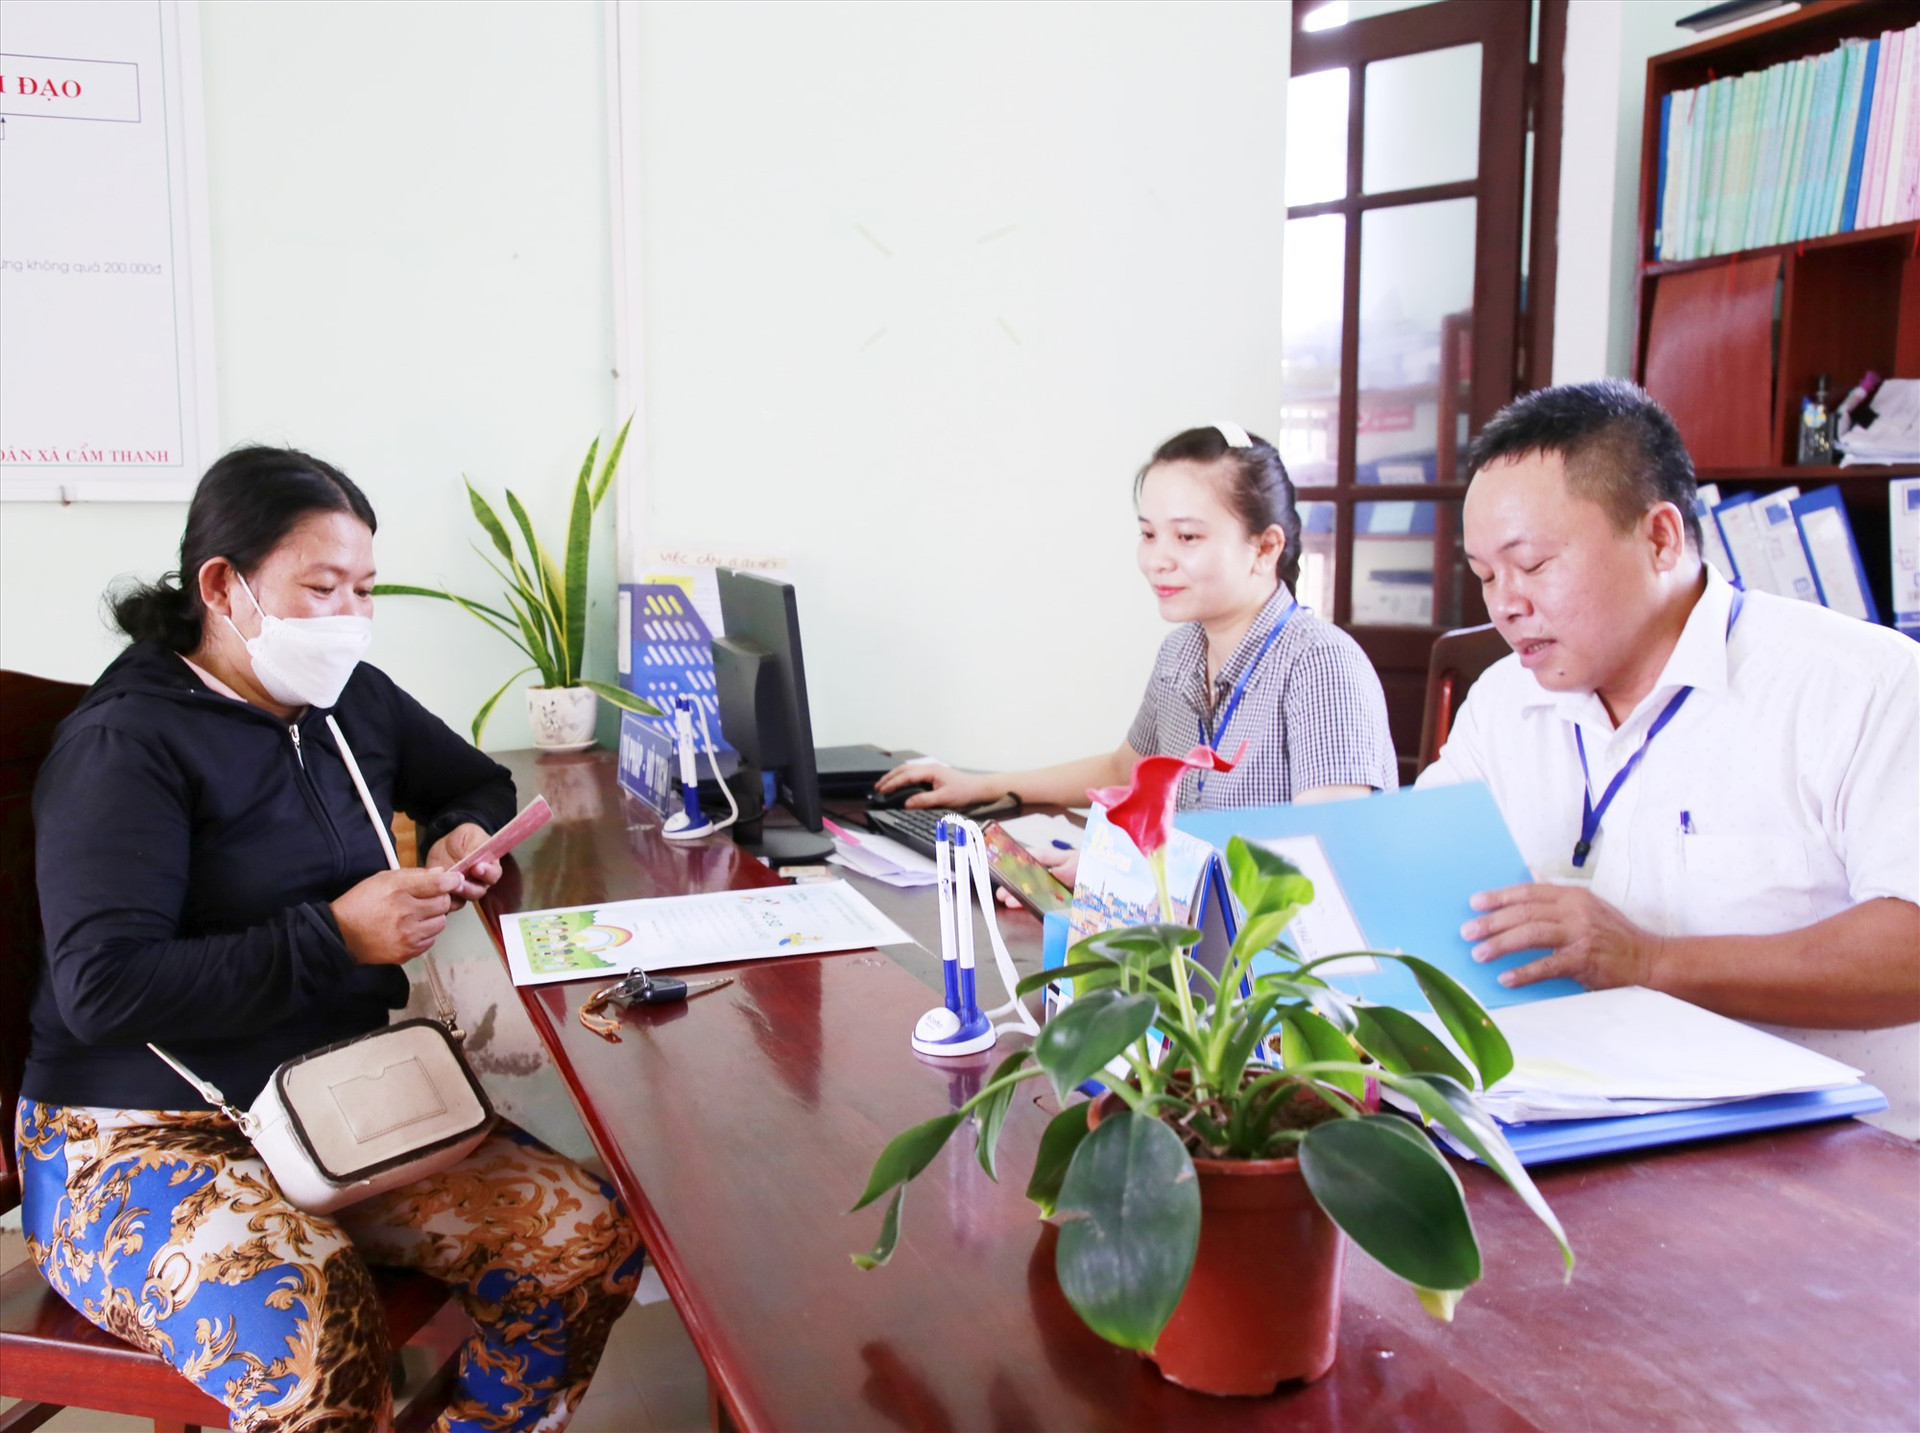 Chị Nguyễn Thị Cận chỉ mất vài phút để xác nhận, làm thủ tục nhập học cho con tại UBND xã Cẩm Thanh. Ảnh: T.C